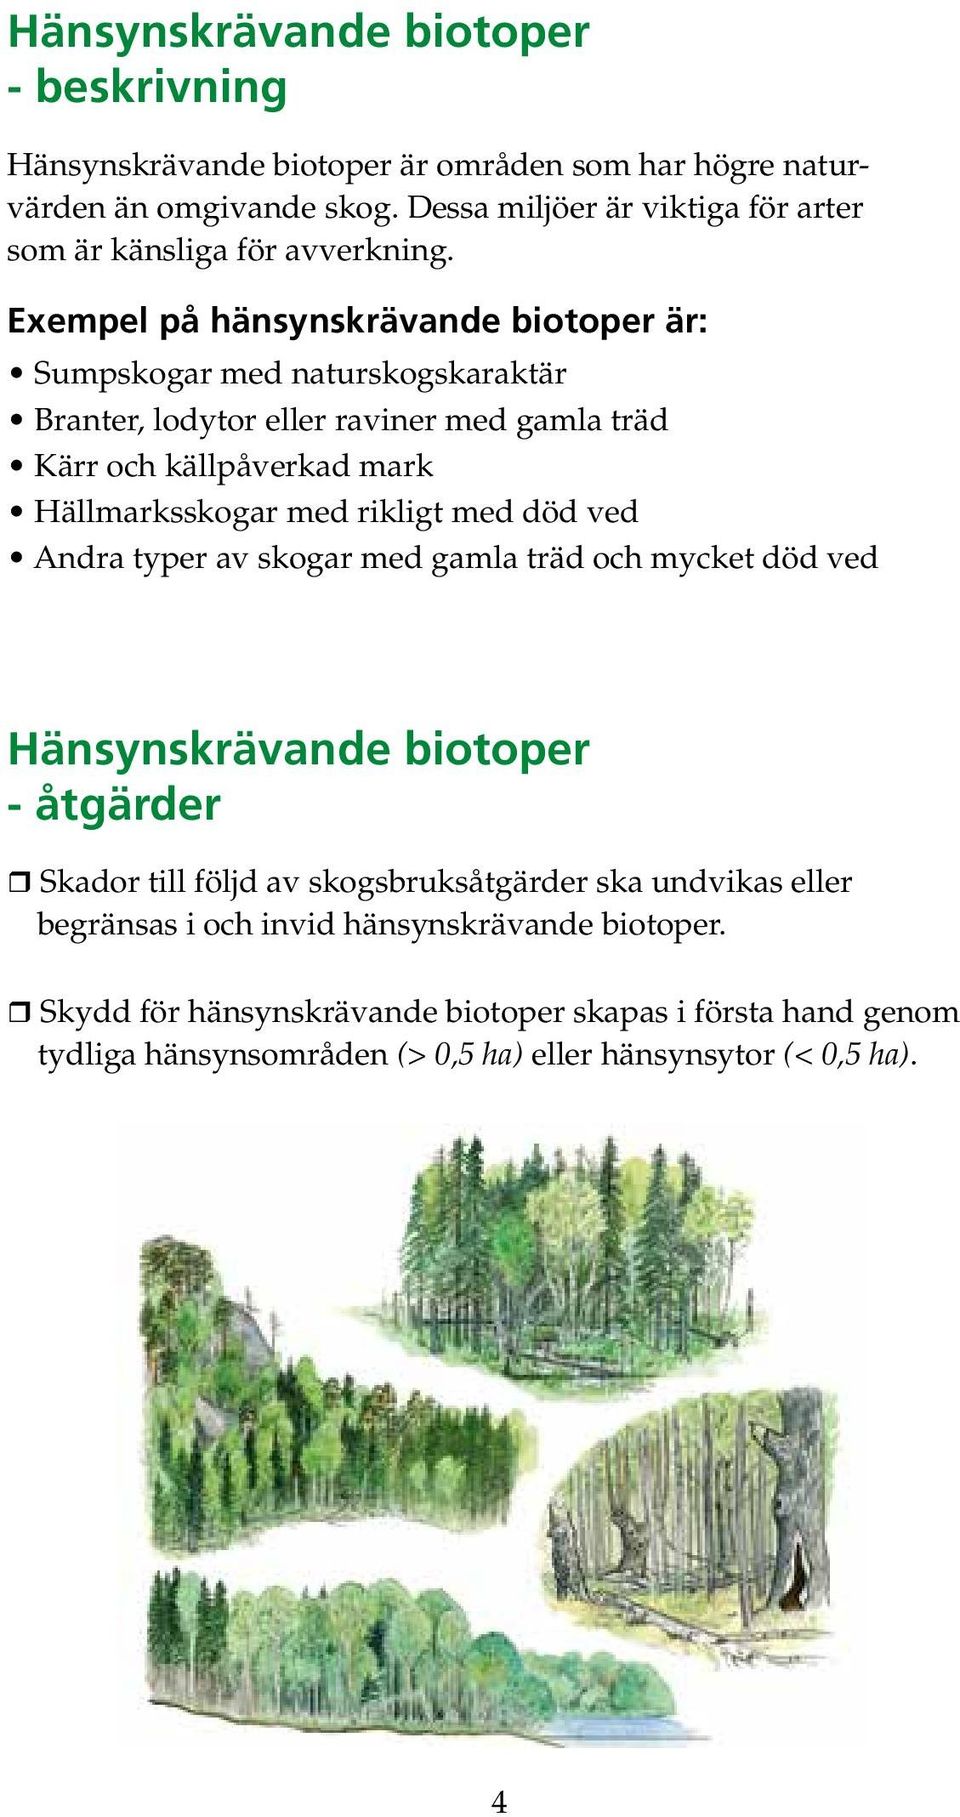 Exempel på hänsynskrävande biotoper är: Sumpskogar med naturskogskaraktär Branter, lodytor eller raviner med gamla träd Kärr och källpåverkad mark Hällmarksskogar med rikligt